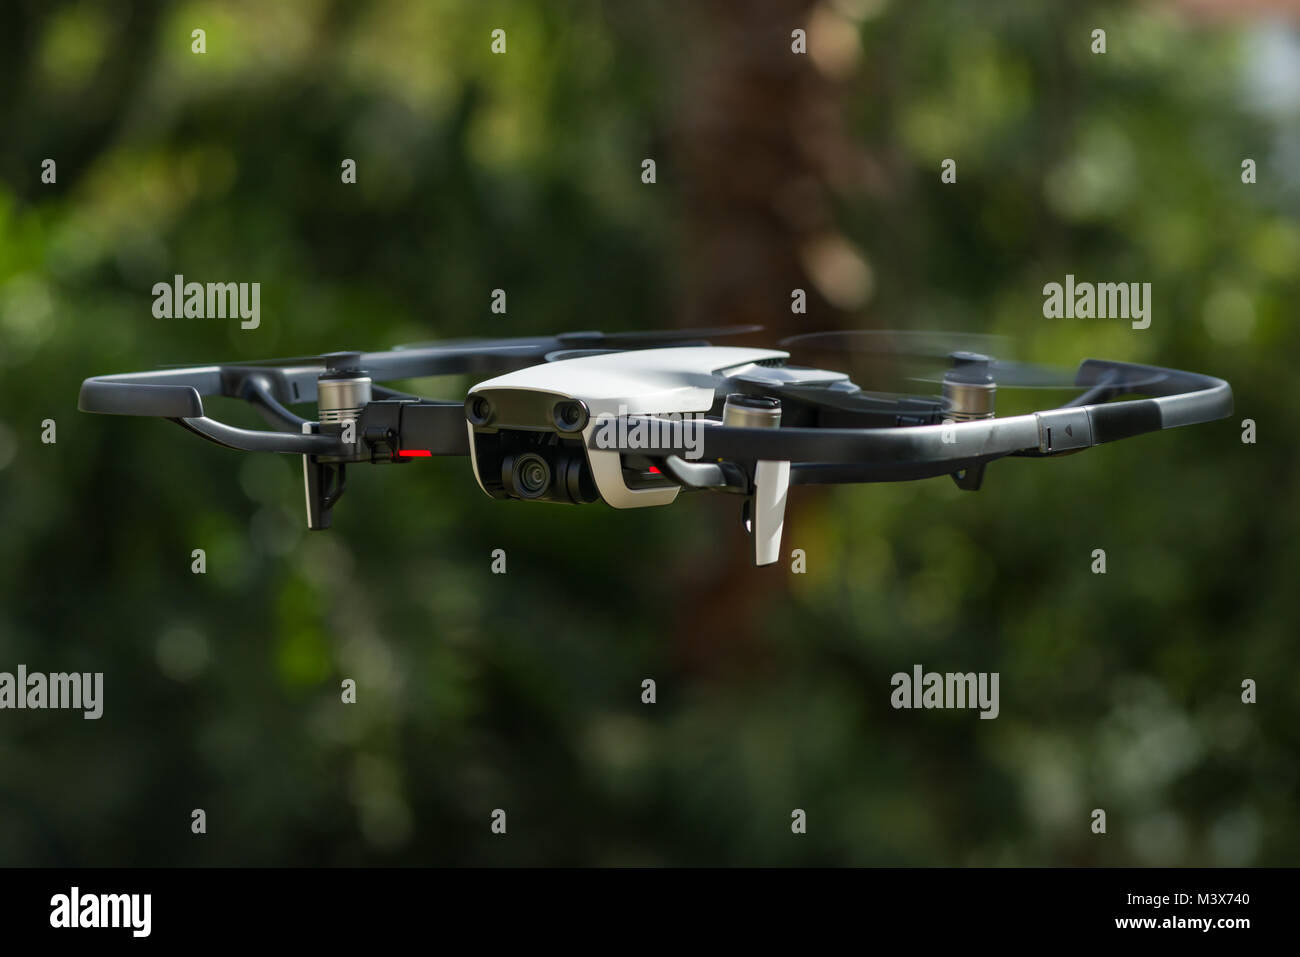 Un DJI Mavic aria drone in volo contro un verde scuro dello sfondo ad albero Foto Stock